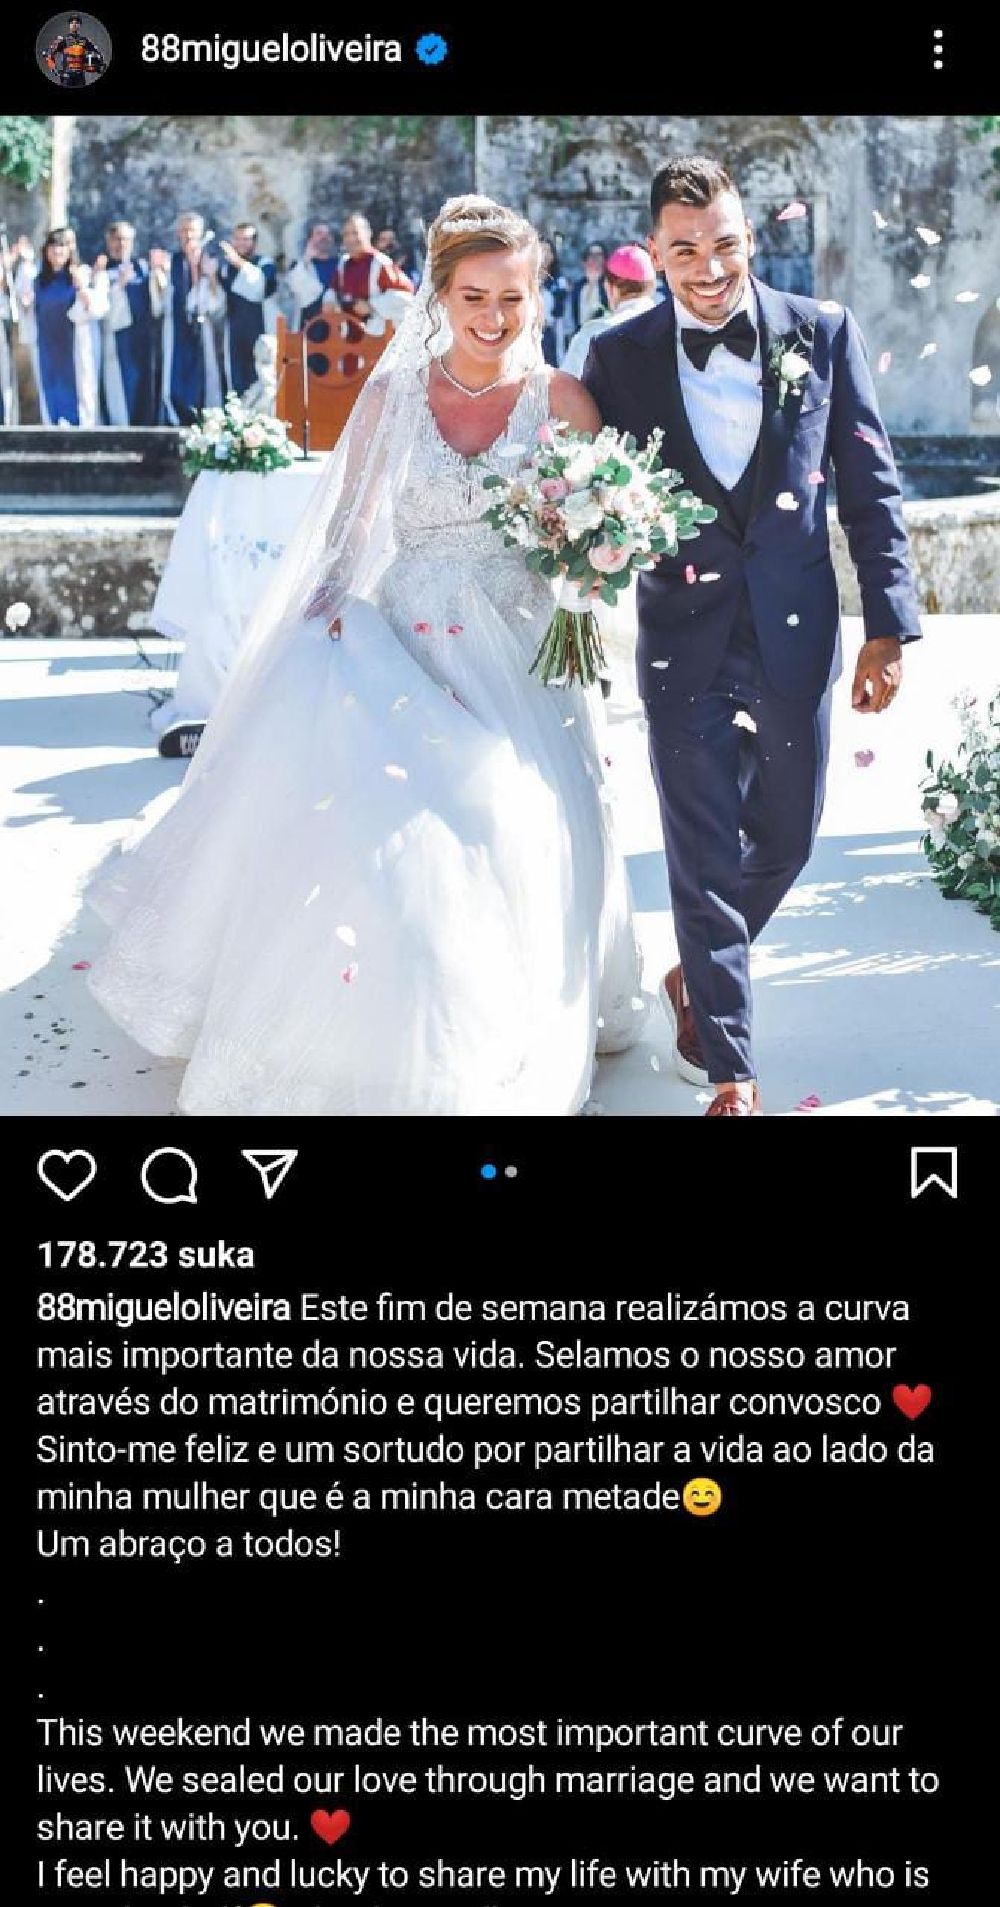 Postingan pernikahan Miguel Oliveira denhan Adik perempuannya